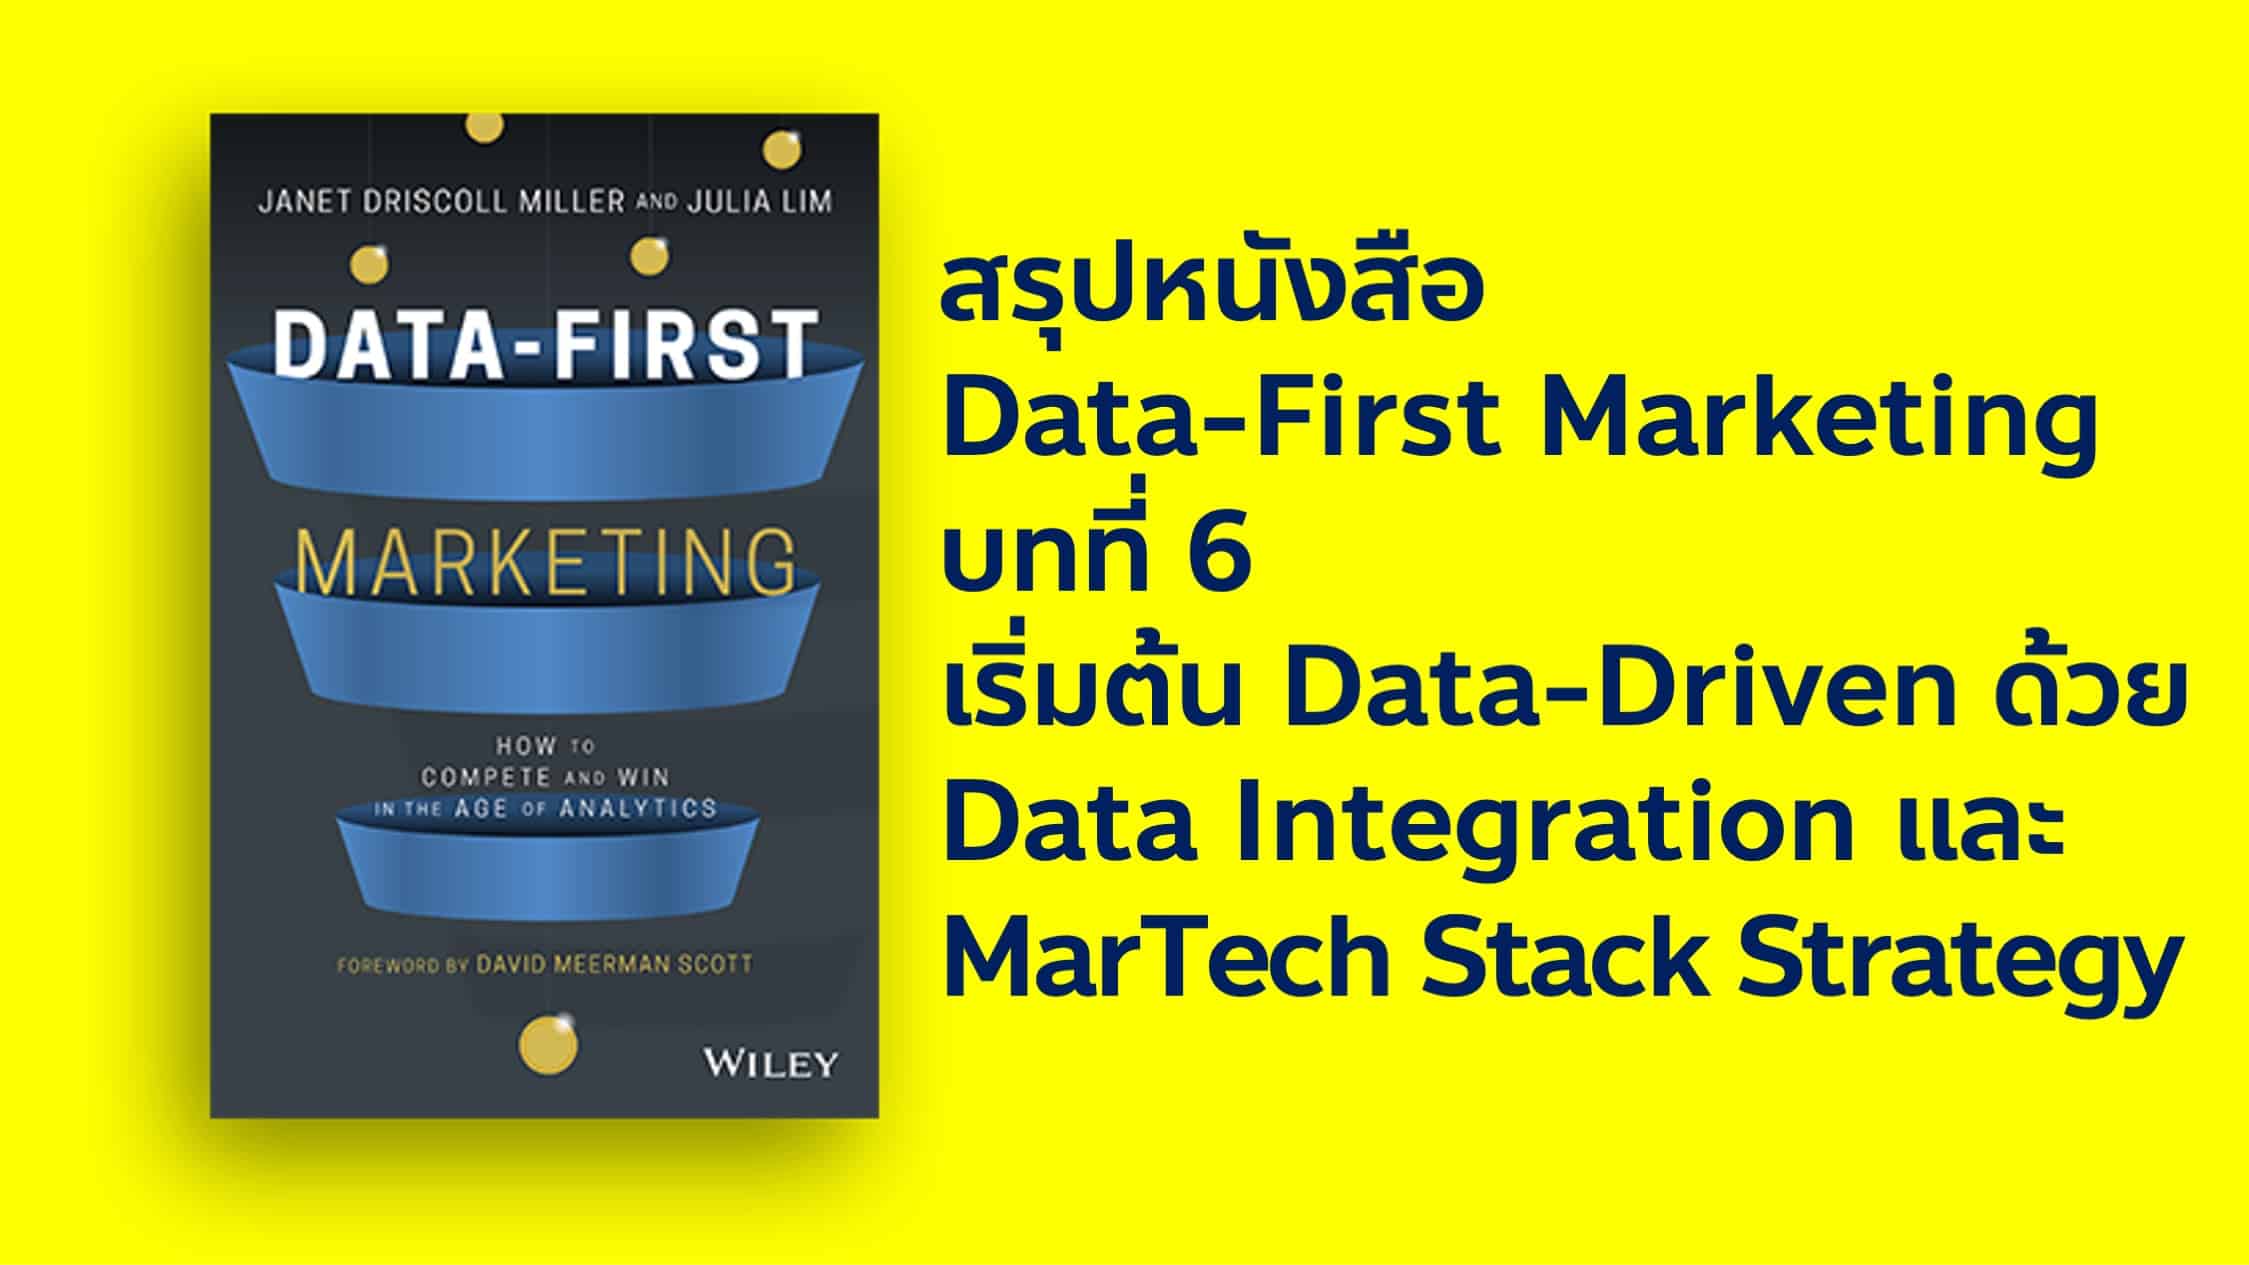 สรุปหนังสือ Data-First Marketing เริ่มต้น Data-Driven ด้วยการทำ Data Intagration และวางกลยุทธ์ Marketing Technology Stack ที่ตอบโจทย์ธุรกิจ